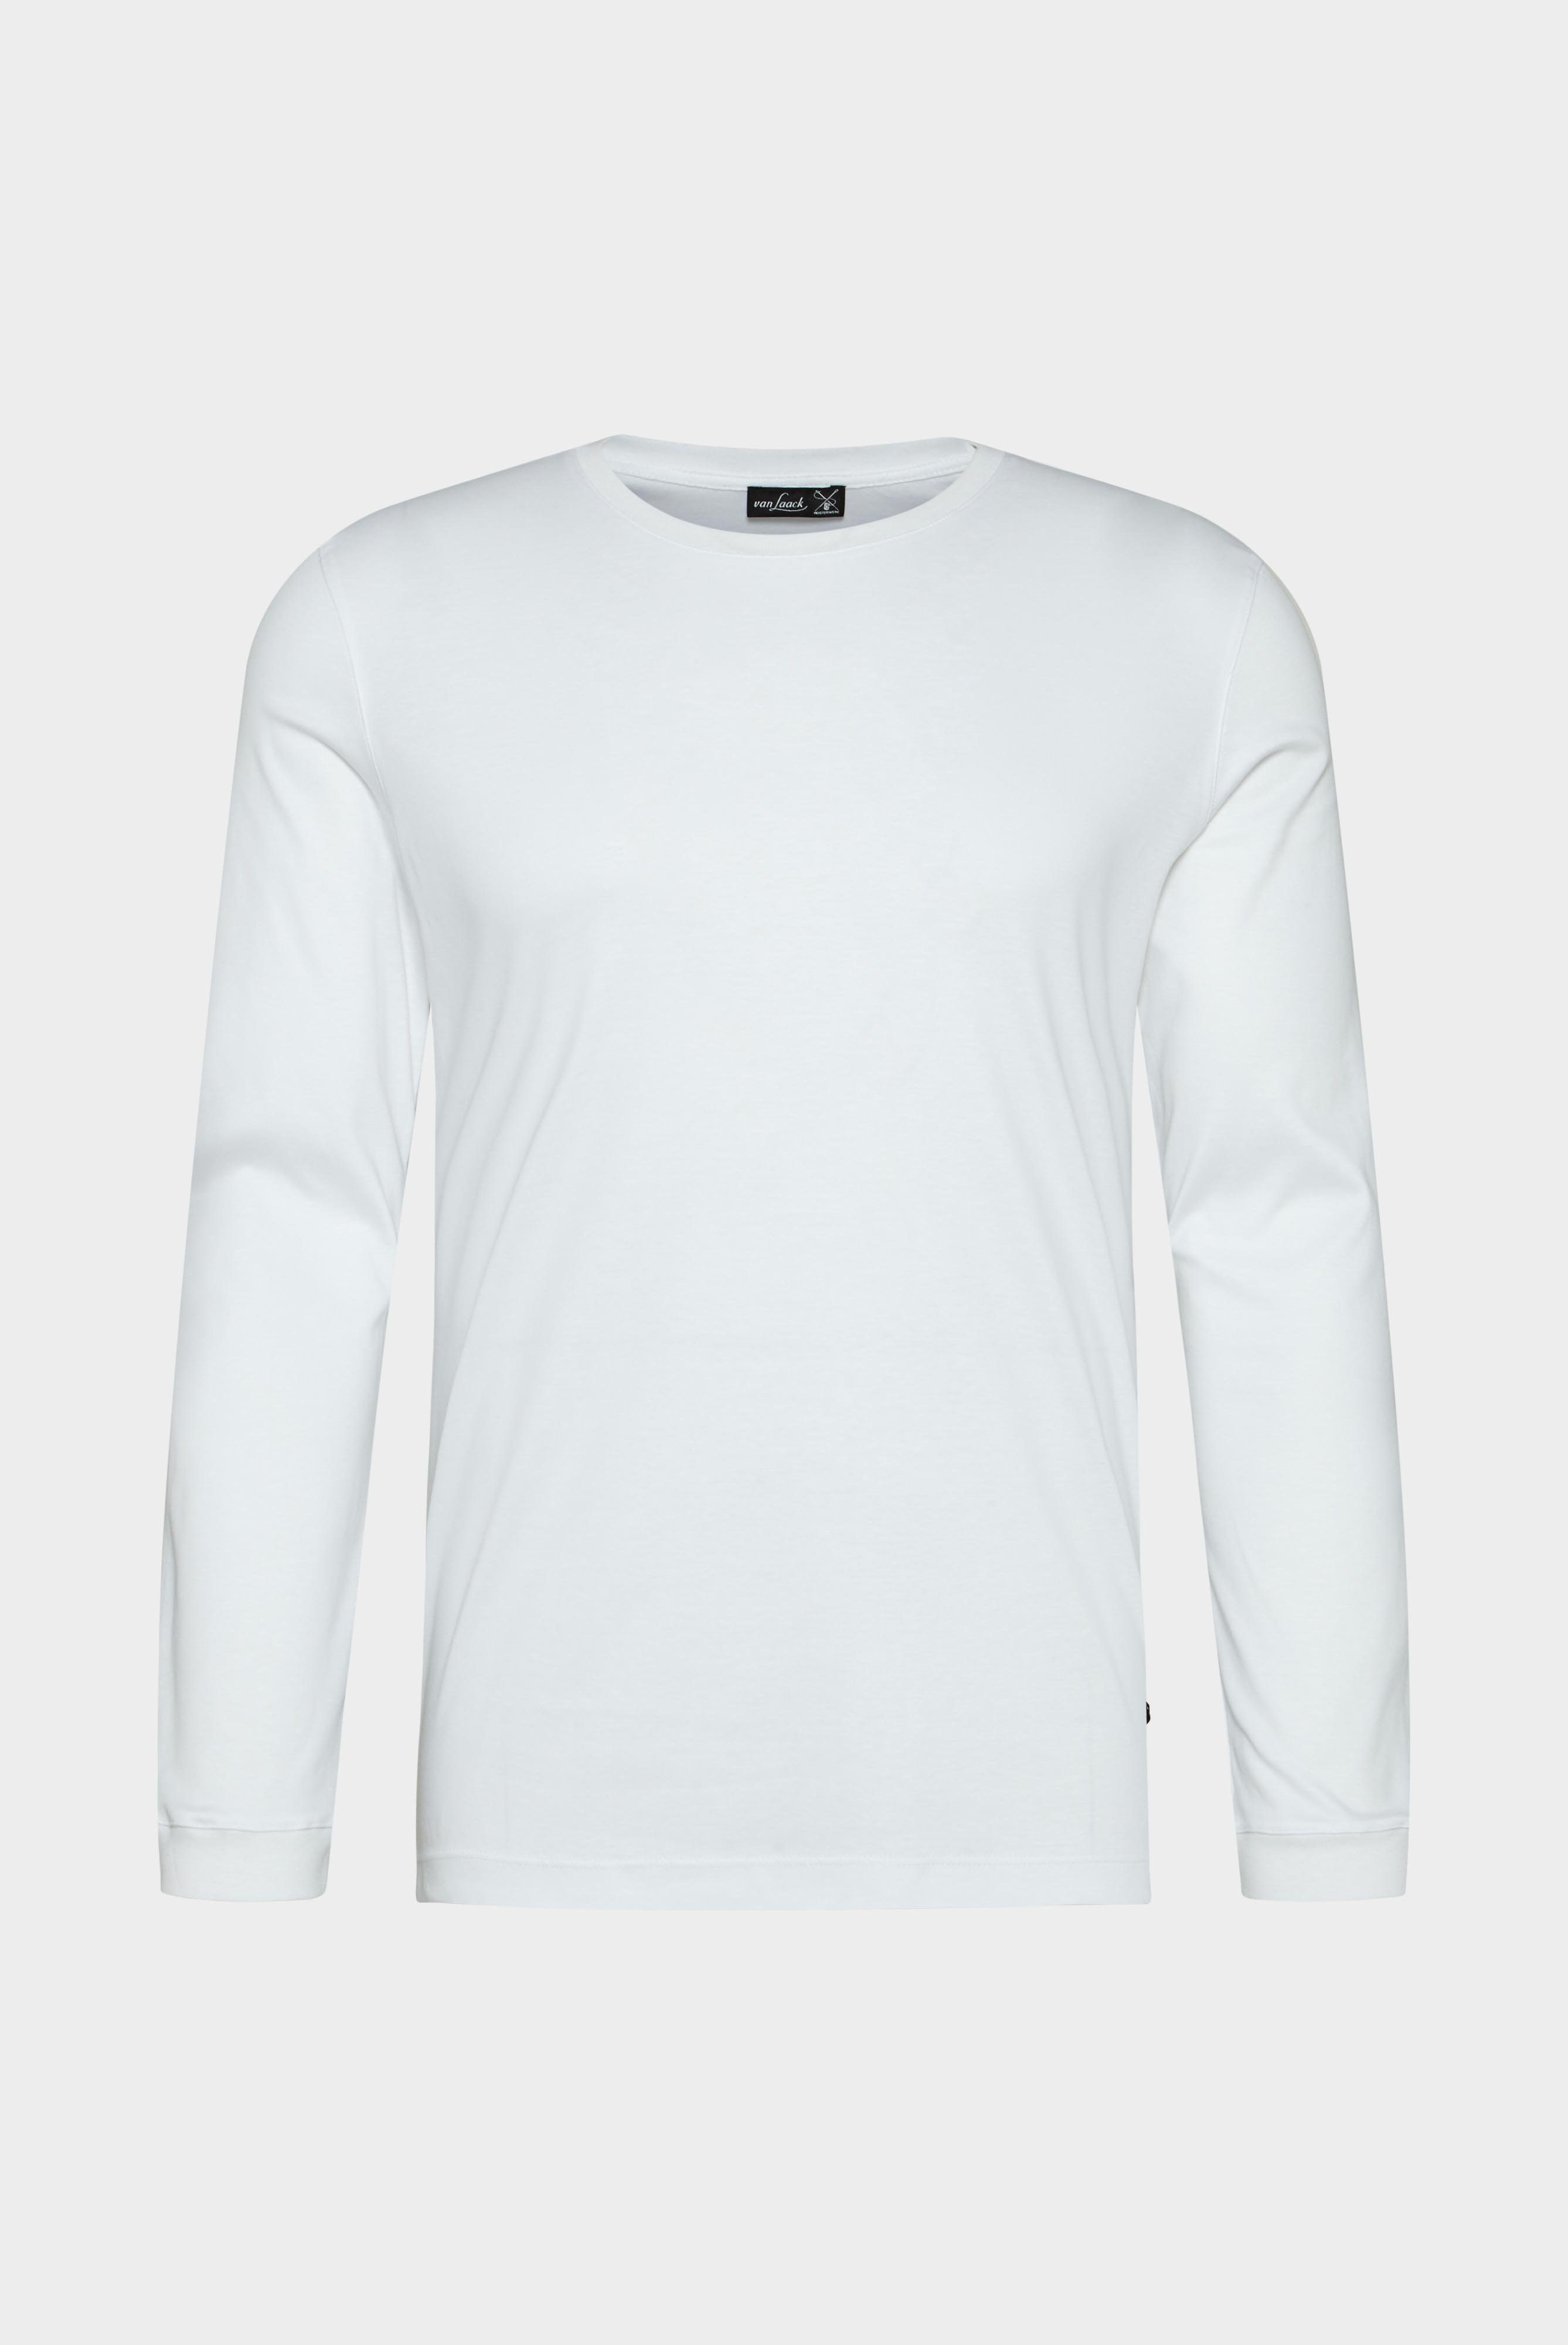 T-Shirts+Langarm Jersey T-Shirt mit Rundhals Slim Fit+20.1718.UX.180031.000.X4L